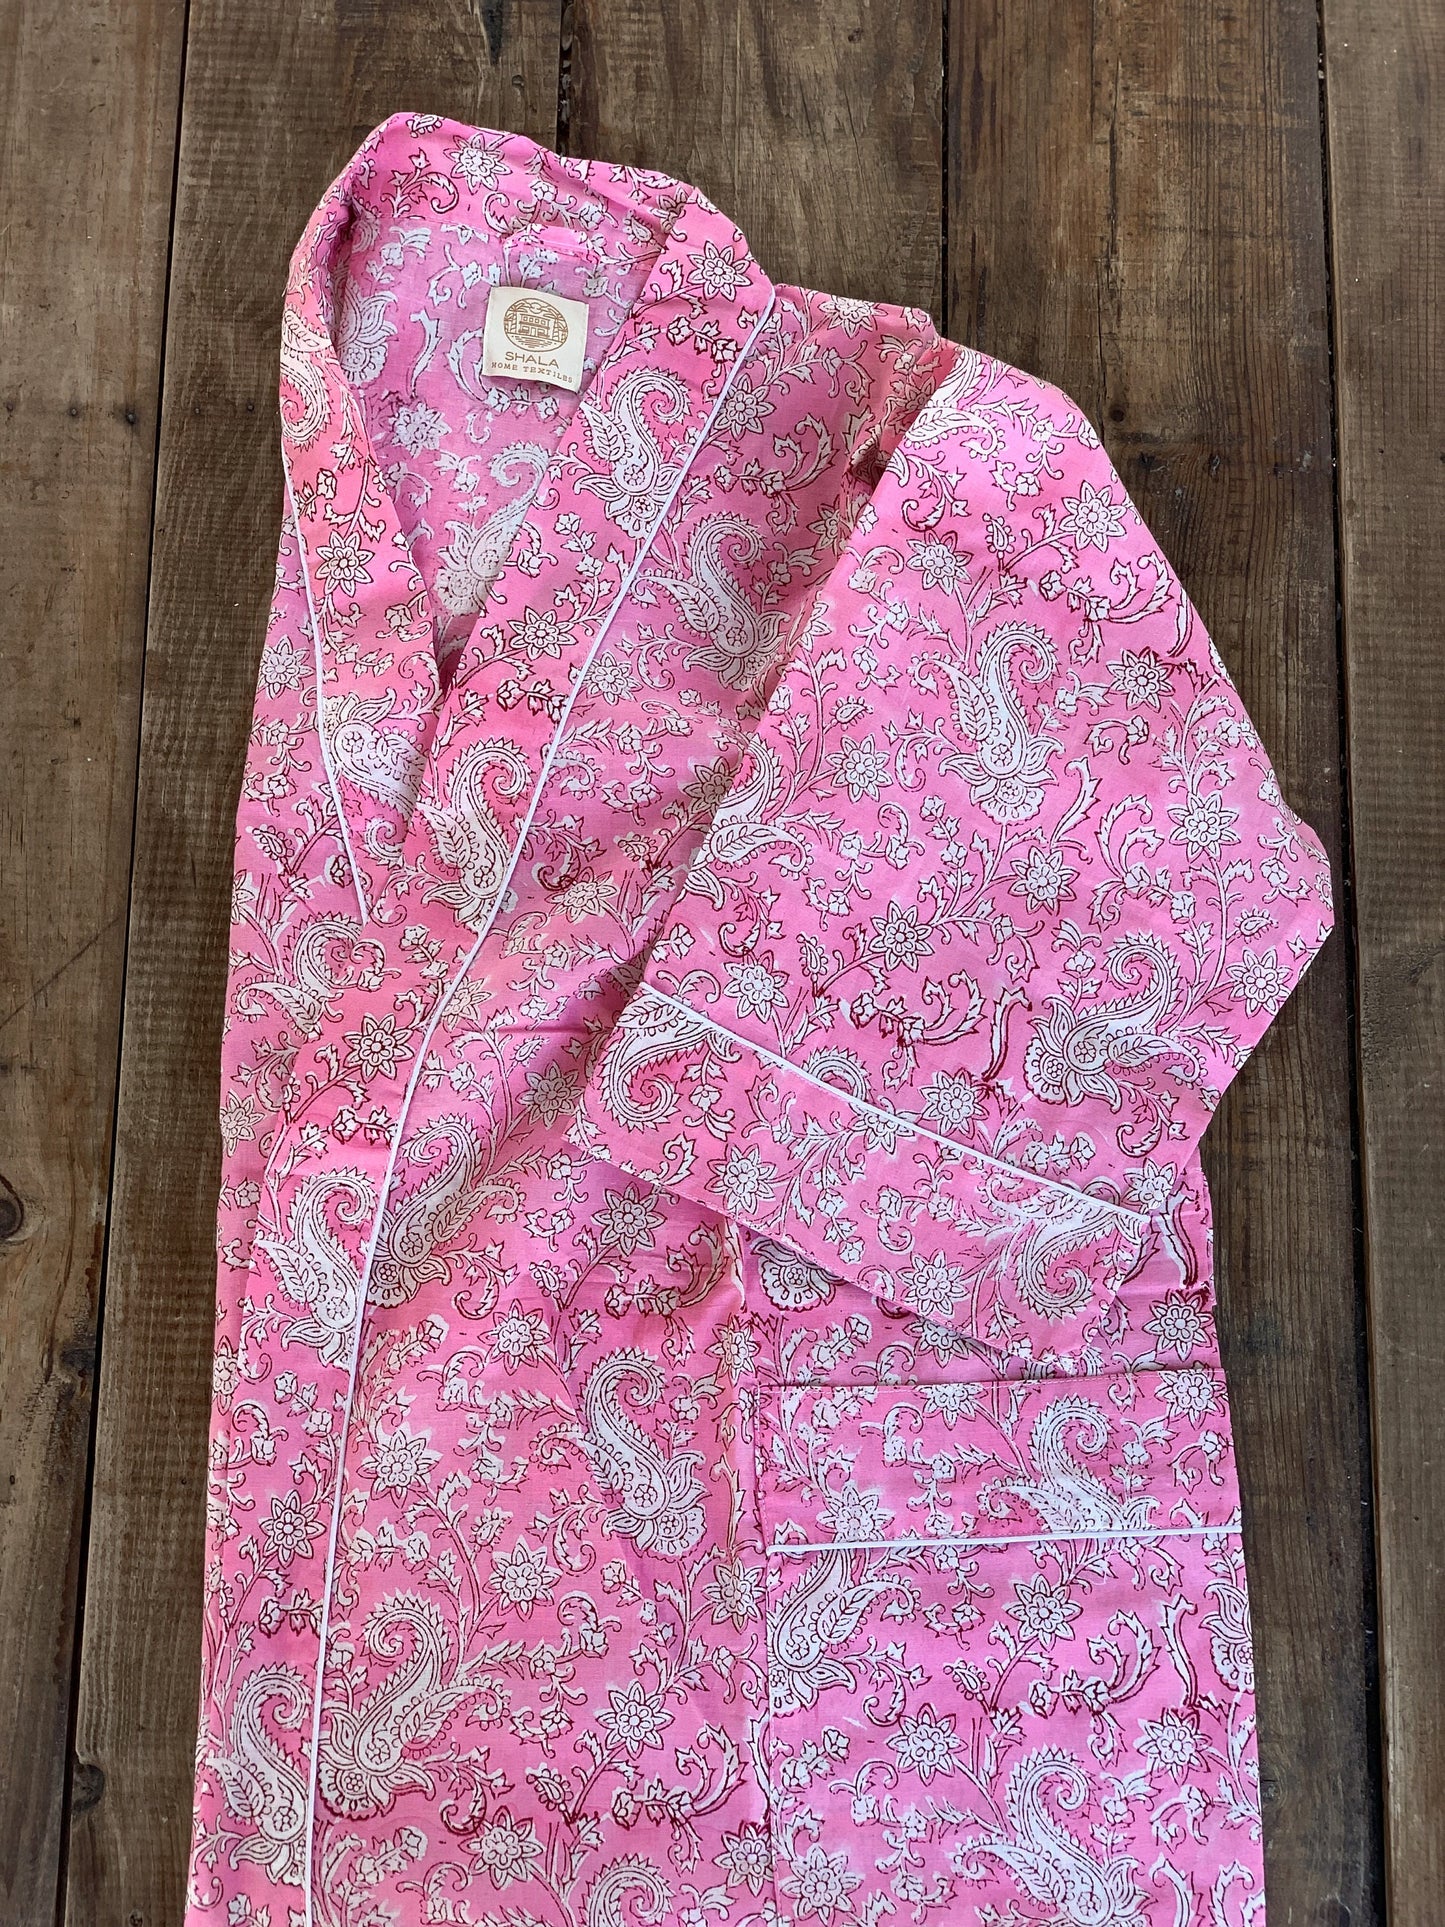 Bata kimono · Algodón puro estampado block print artesanal en India · Bata novia · Bata dama honor · Kimono boho · Rosa